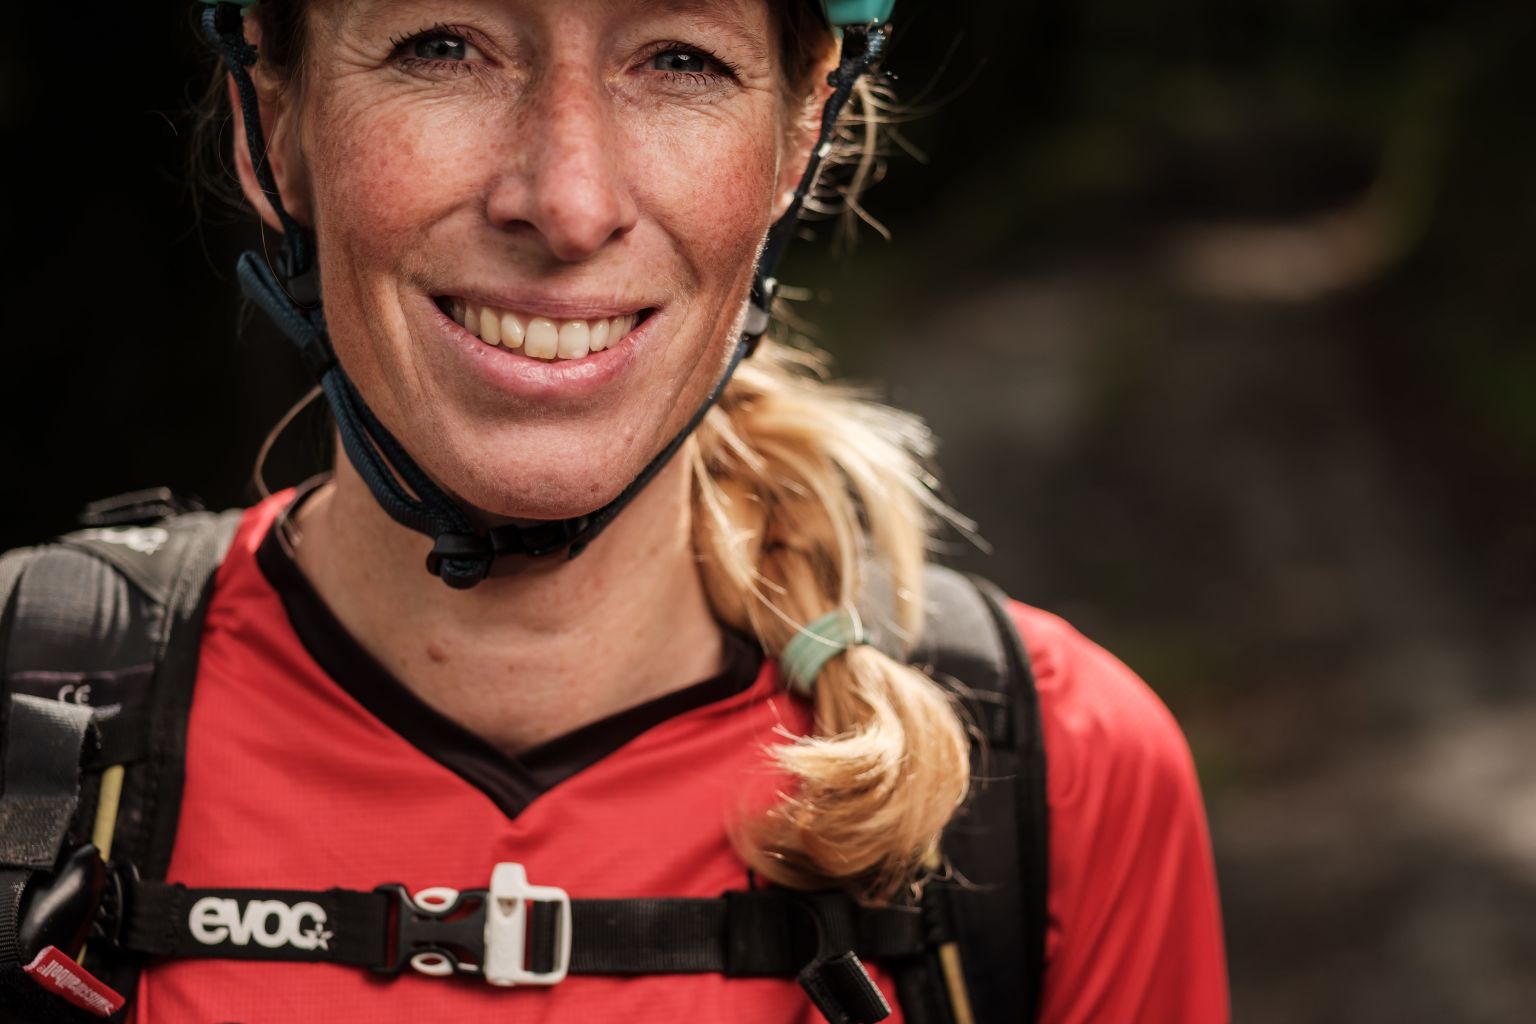 Jess Kroon ist eine der arriviertesten Mountainbike-Guides im Wallis. Die Holländerin und ihr Mann haben in Verbier ein Mountainbike-Paradies gefunden und bieten Kurse und BikeWochen an, Wallis, Schweiz